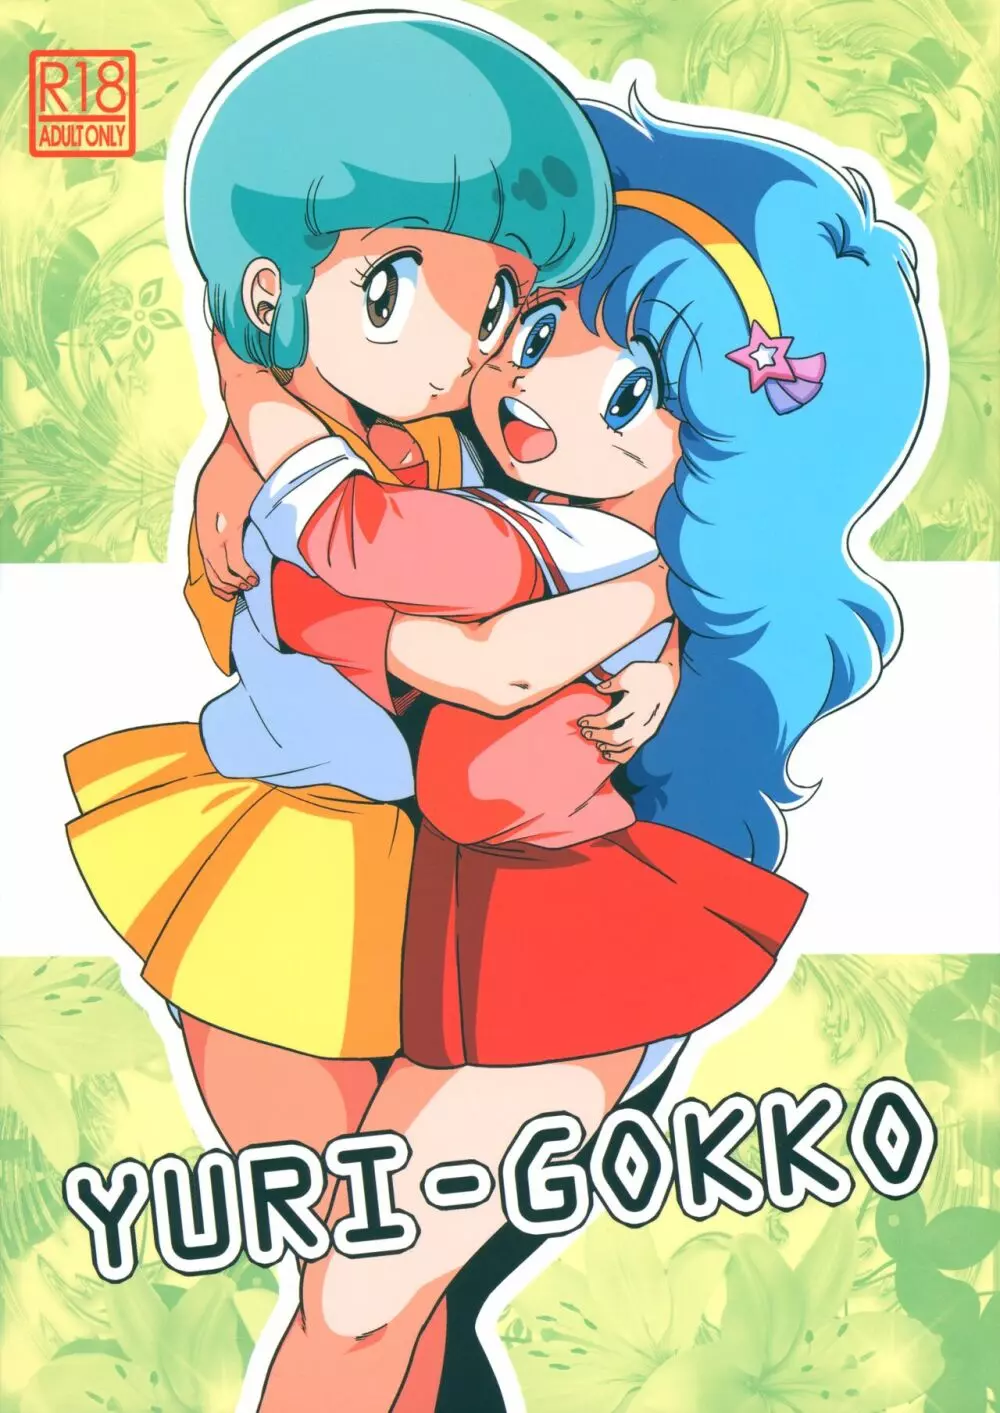 YURI-GOKKO